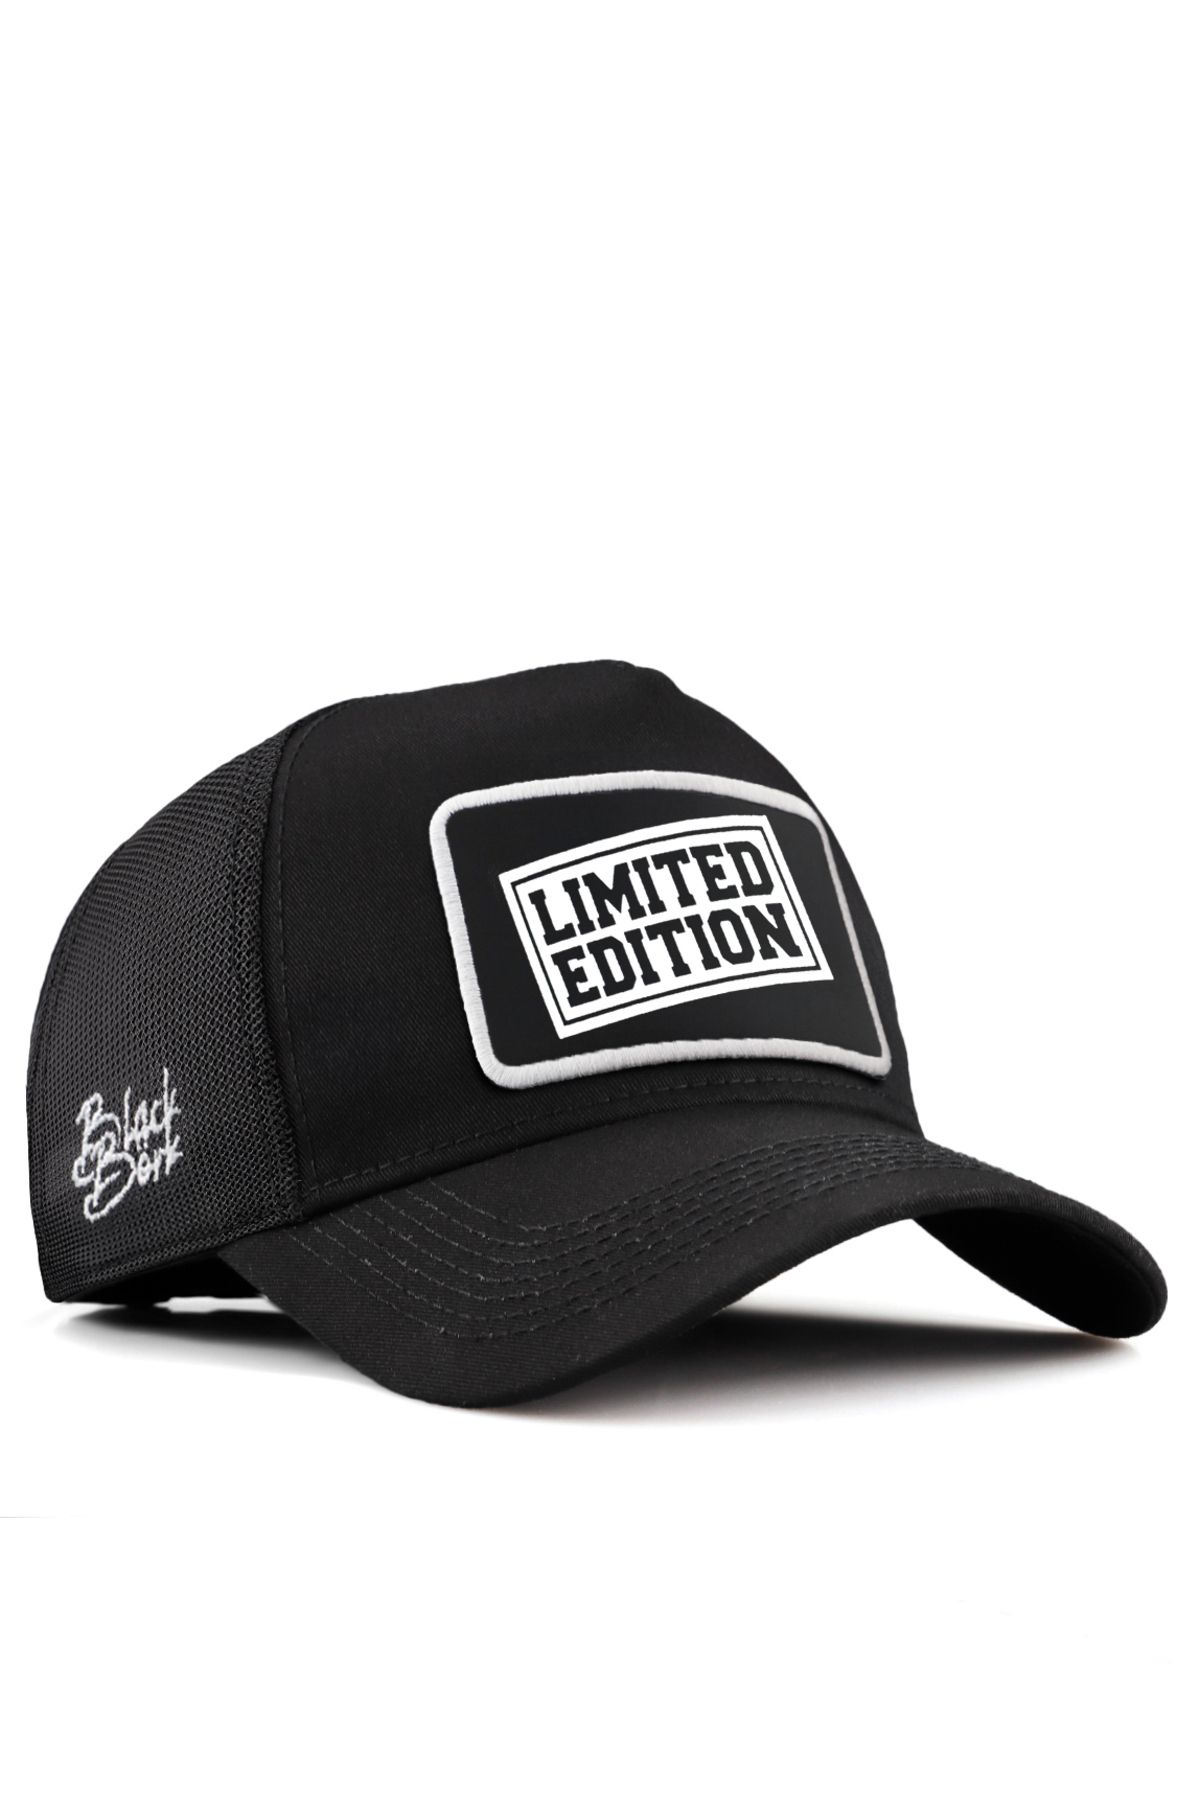 BlackBörk V2 Trucker Limited Edition - 2sb Kod Logolu Unisex Siyah Şapka (CAP)